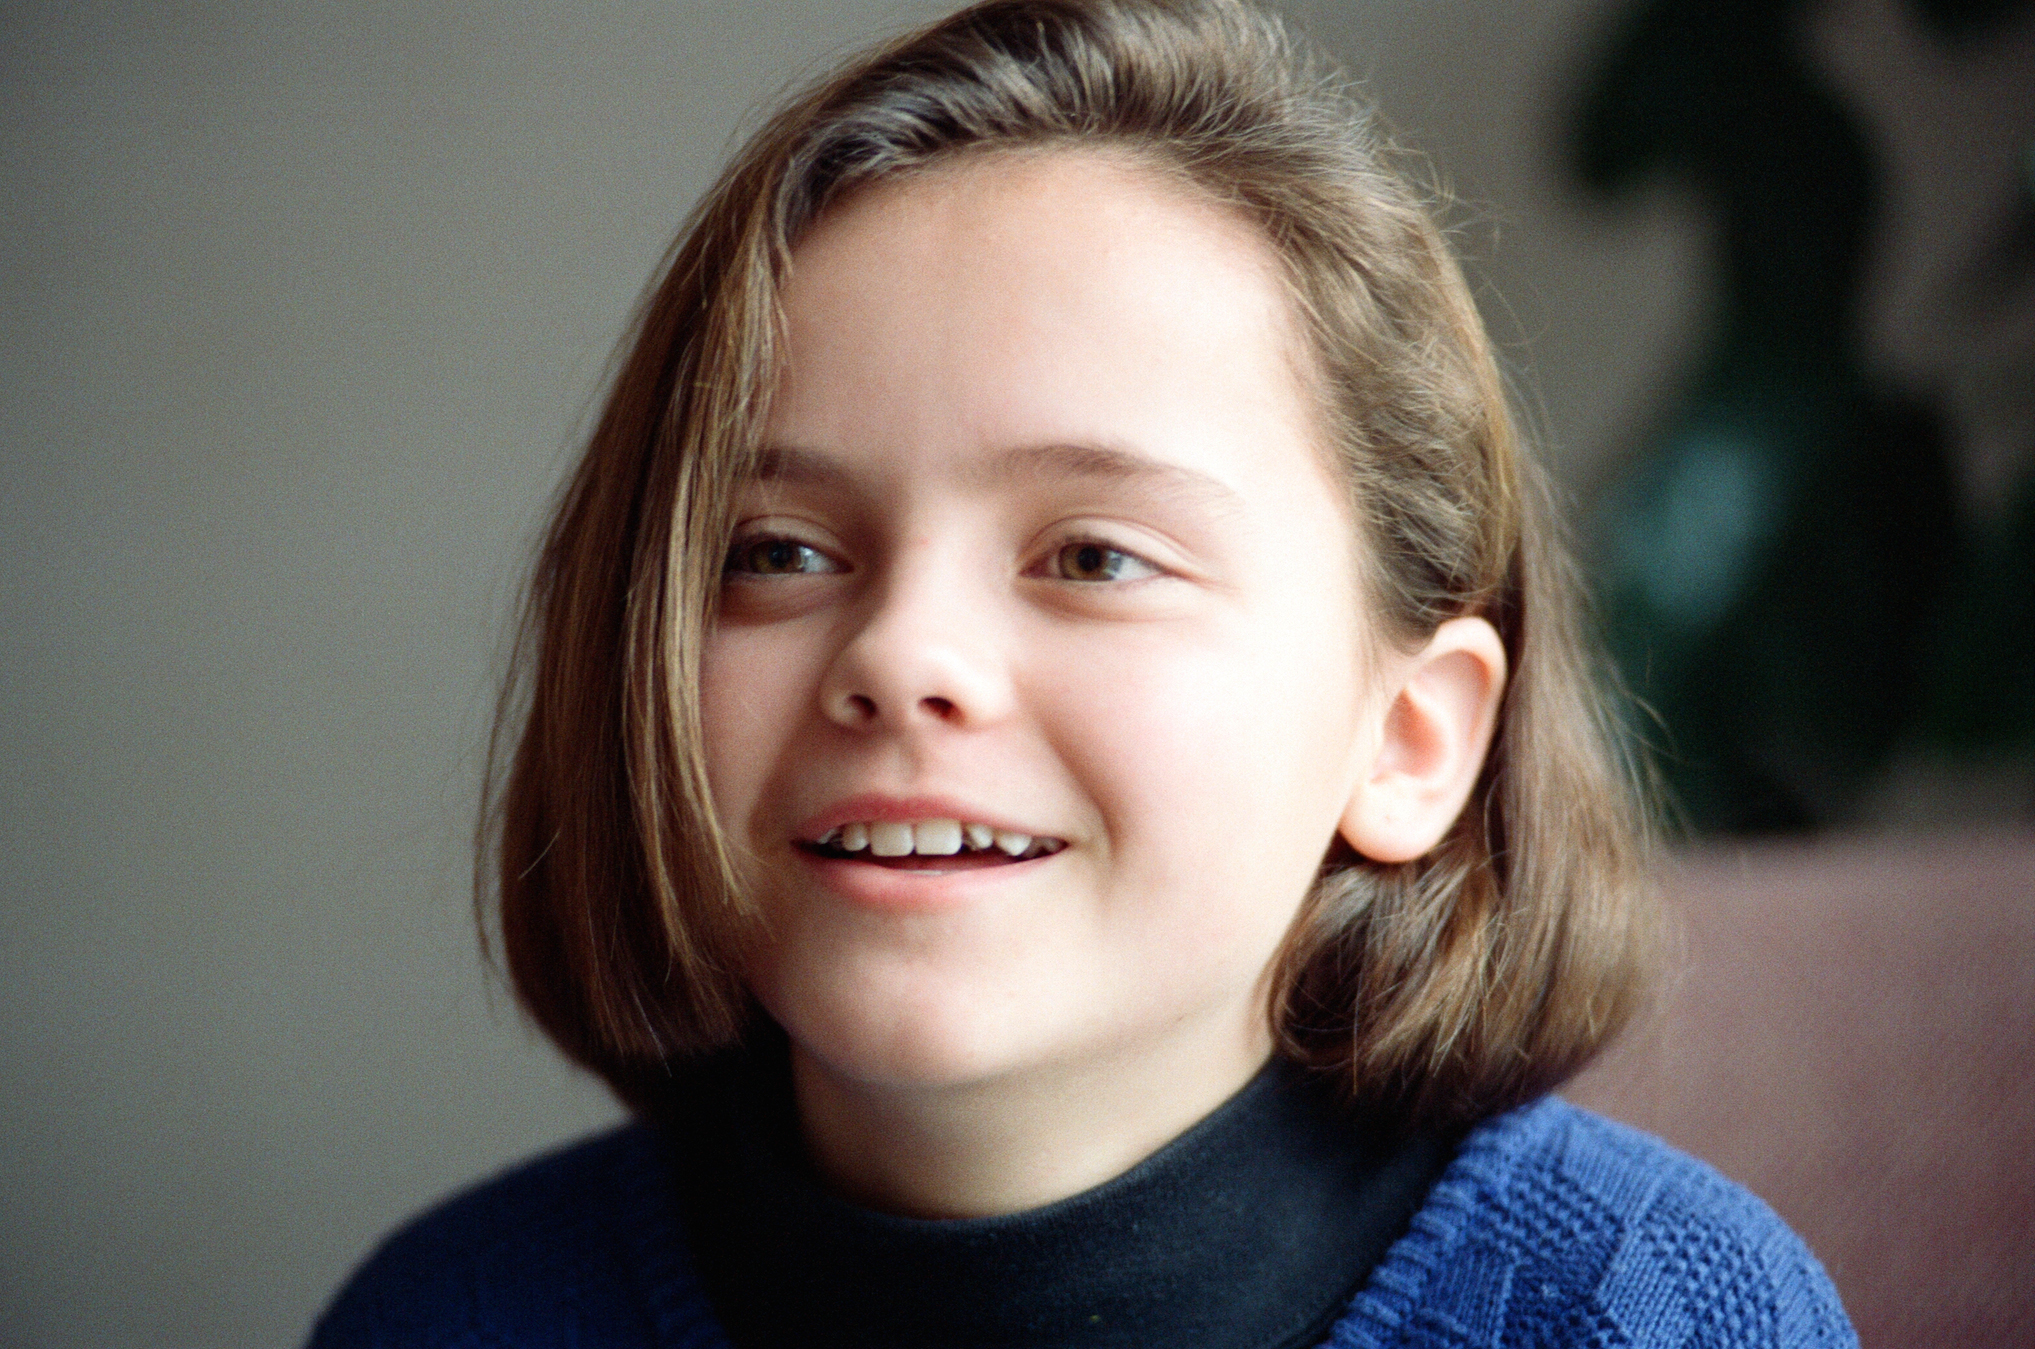 11-year-old Christina Ricci smiling at the camera